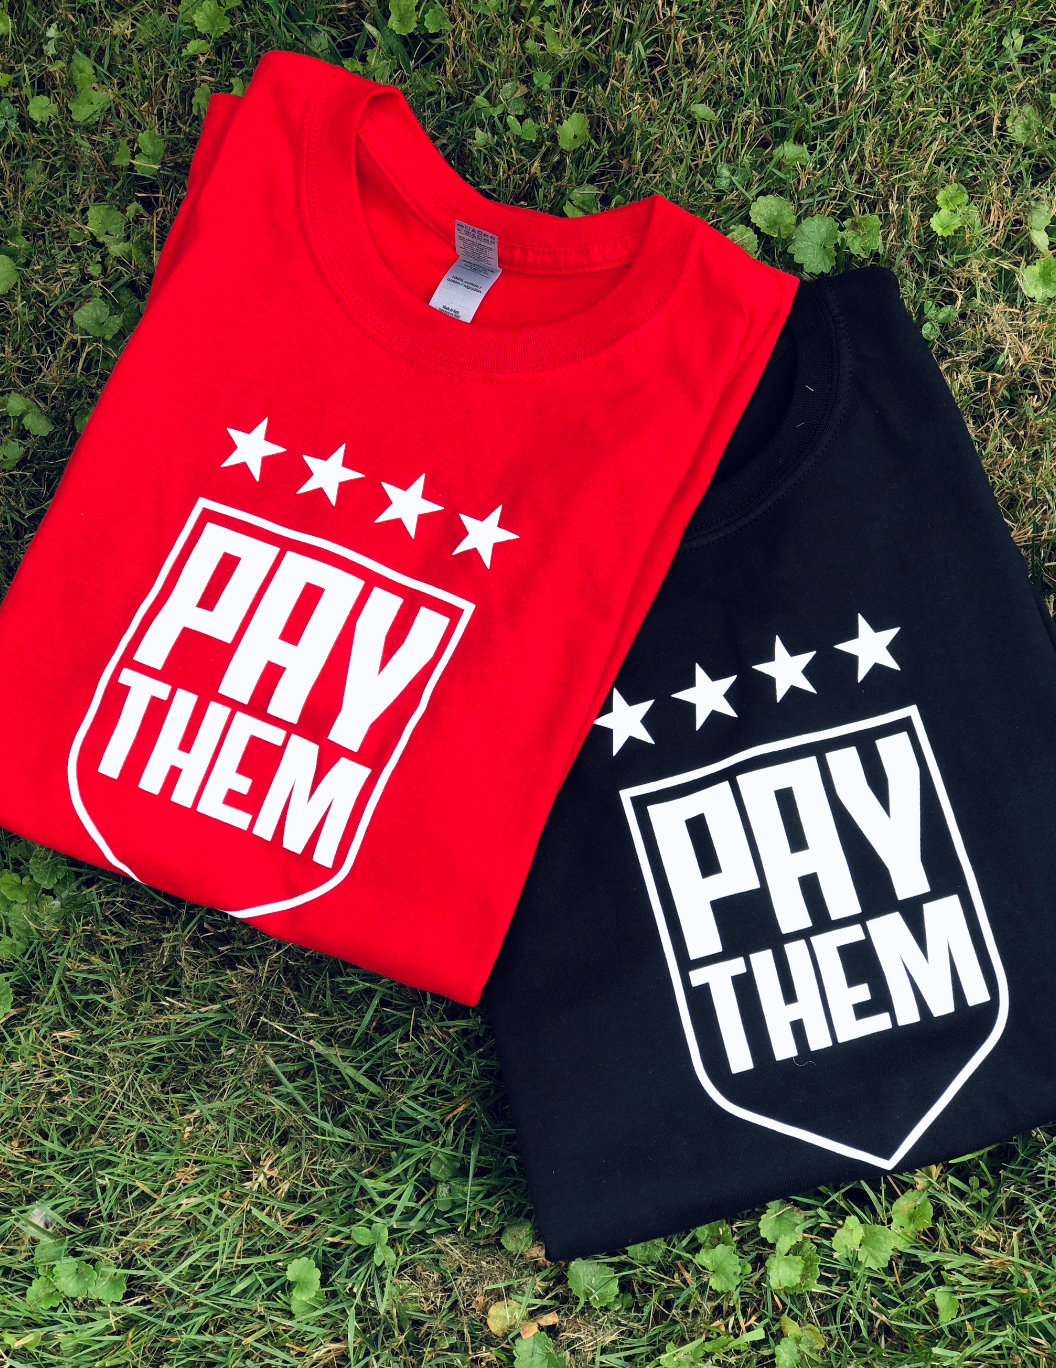 PAY THEM T-shirt